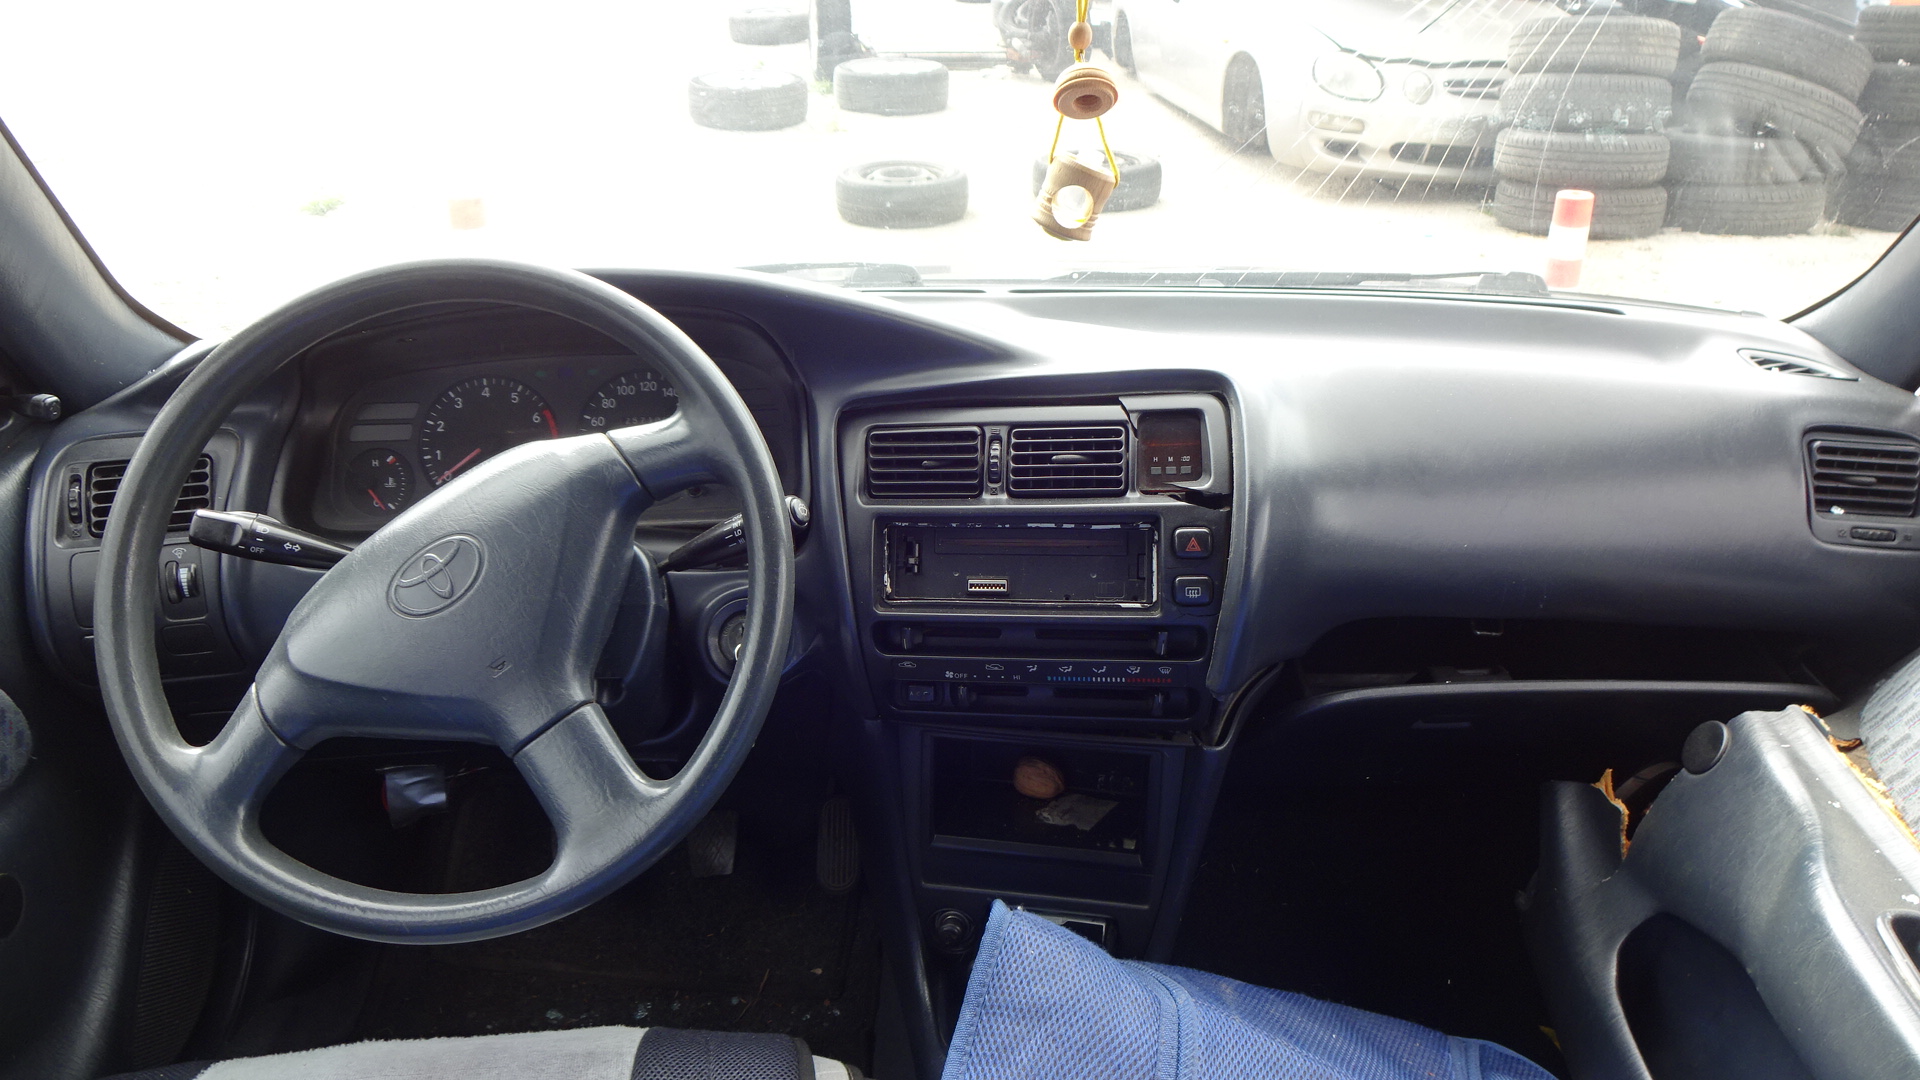 Ζώνες Ασφαλείας Toyota Corolla ’97 Προσφορά.